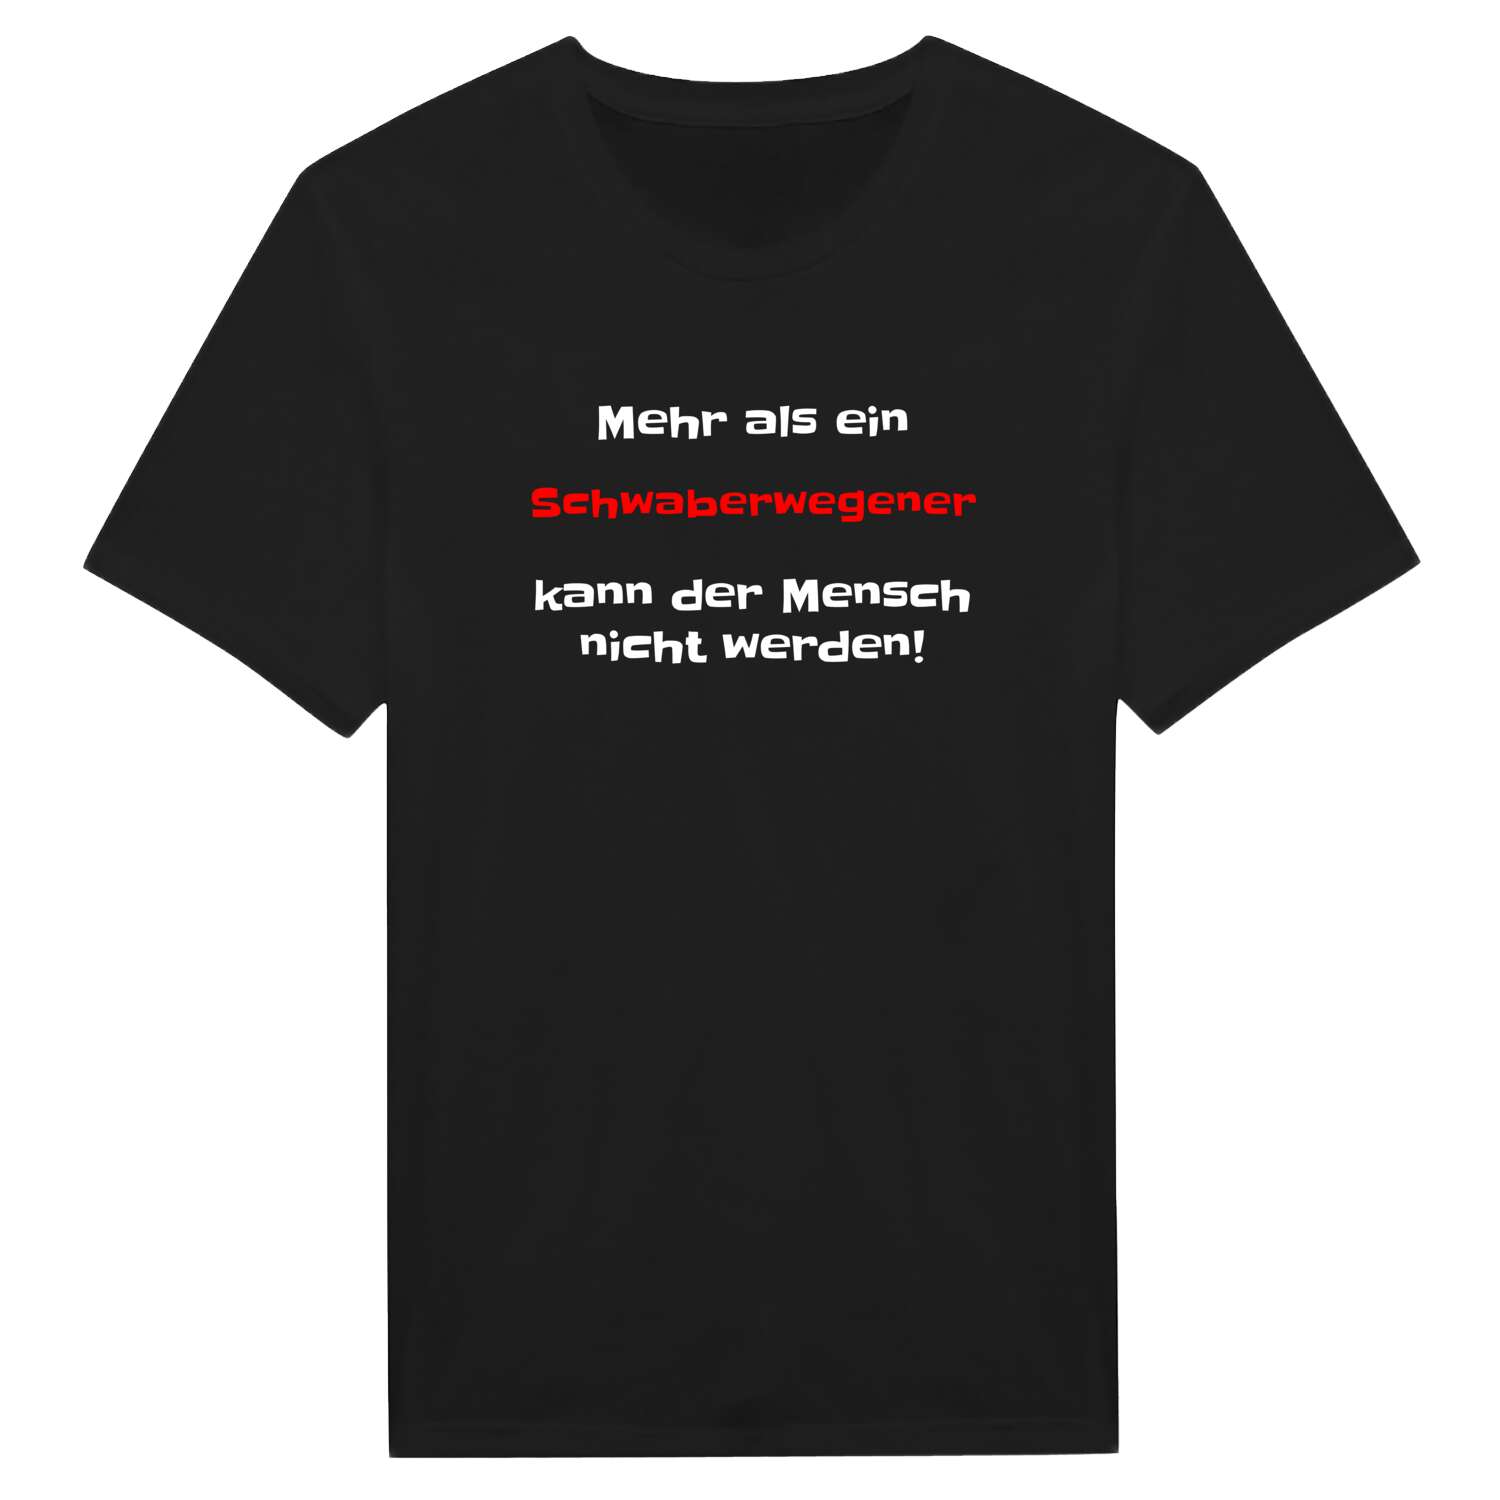 Schwaberwegen T-Shirt »Mehr als ein«